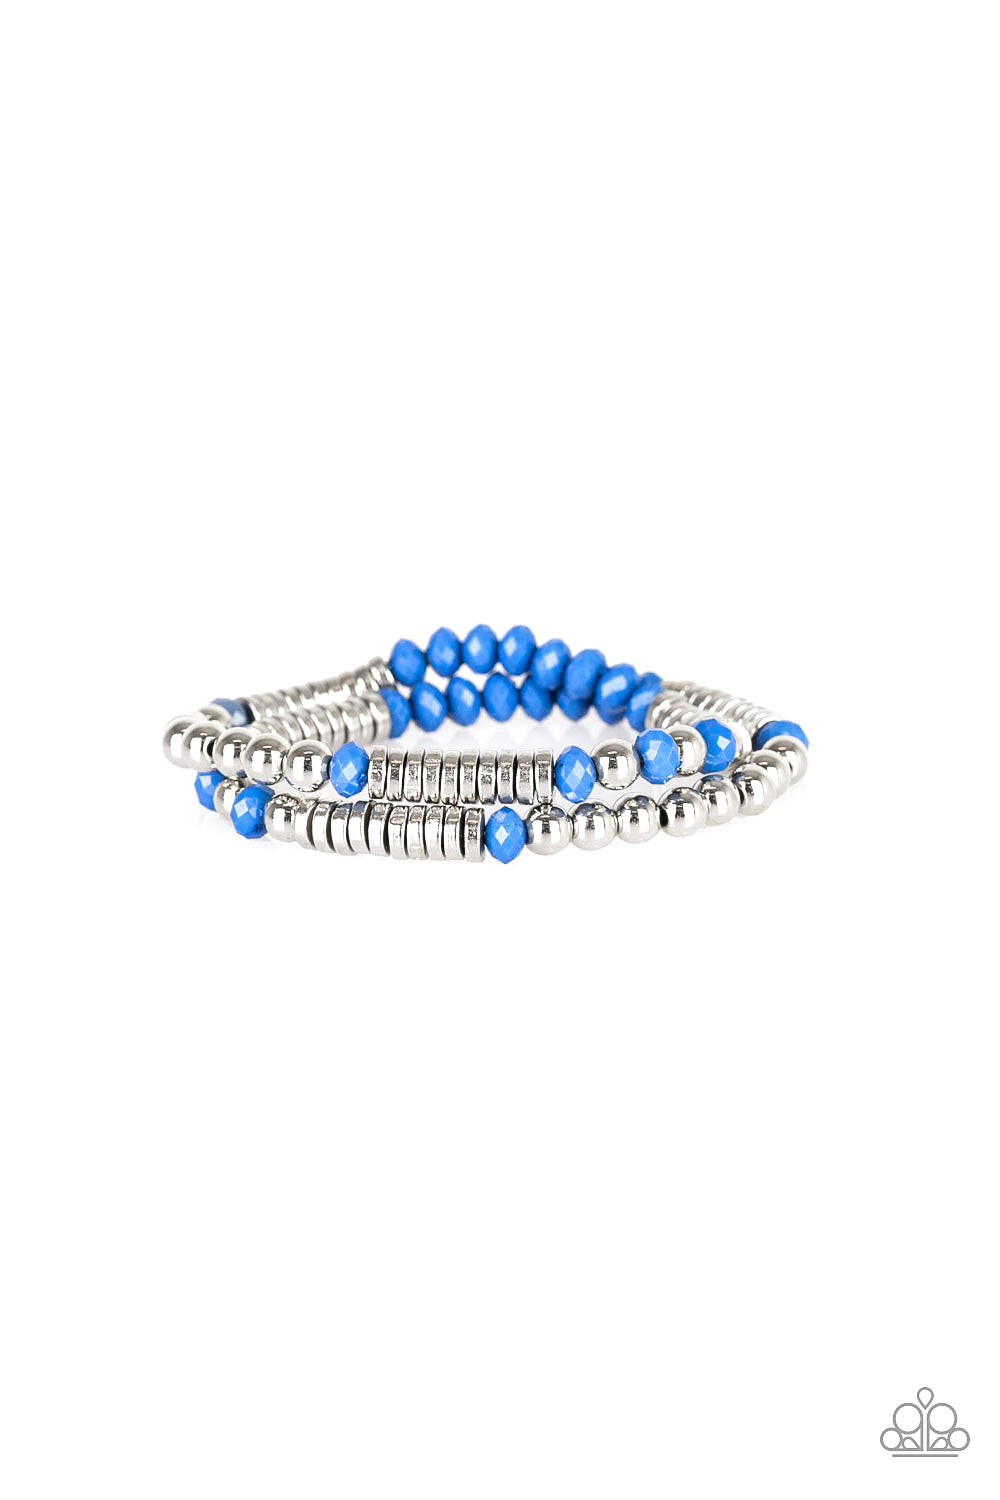 five-dollar-jewelry-downright-dressy-blue-bracelet-paparazzi-accessories